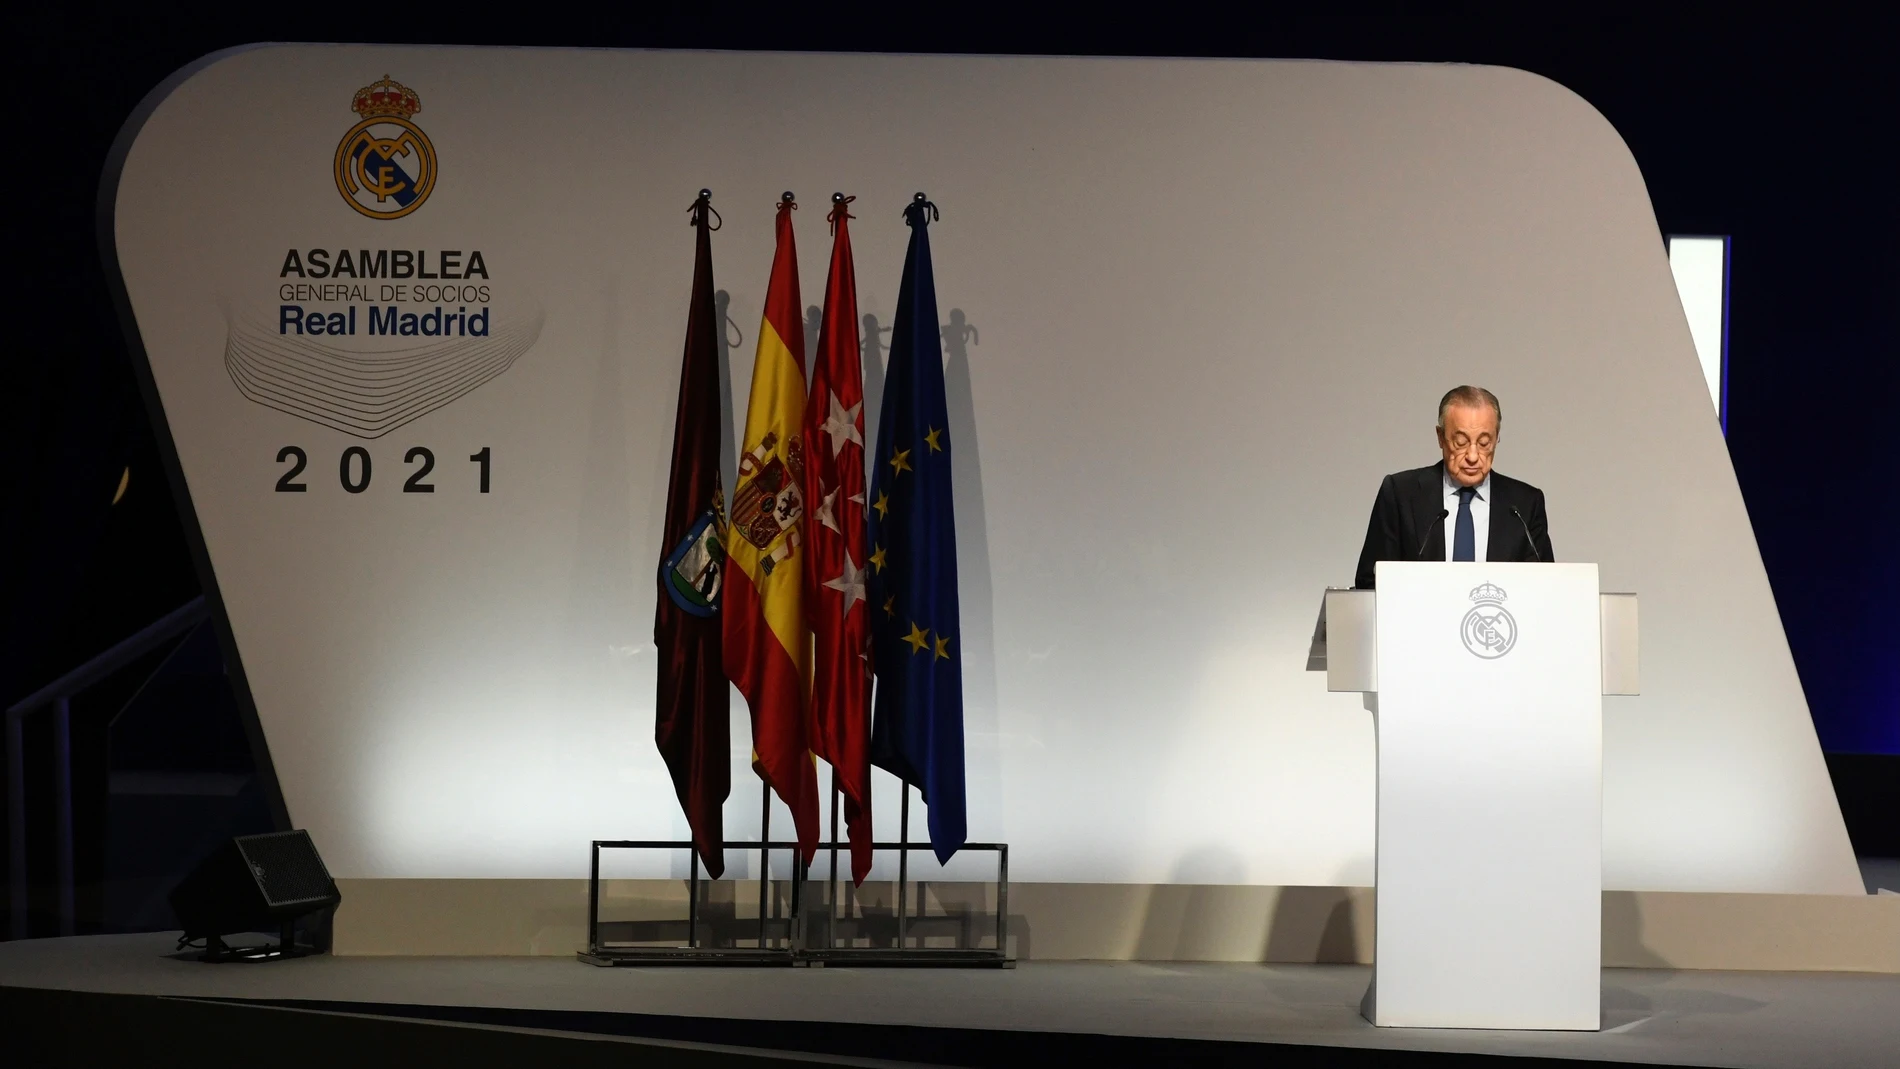 El presidente del Real Madrid, Florentino Pérez, interviene durante las Asambleas Ordinaria y Extraordinaria de Socios Representantes del club